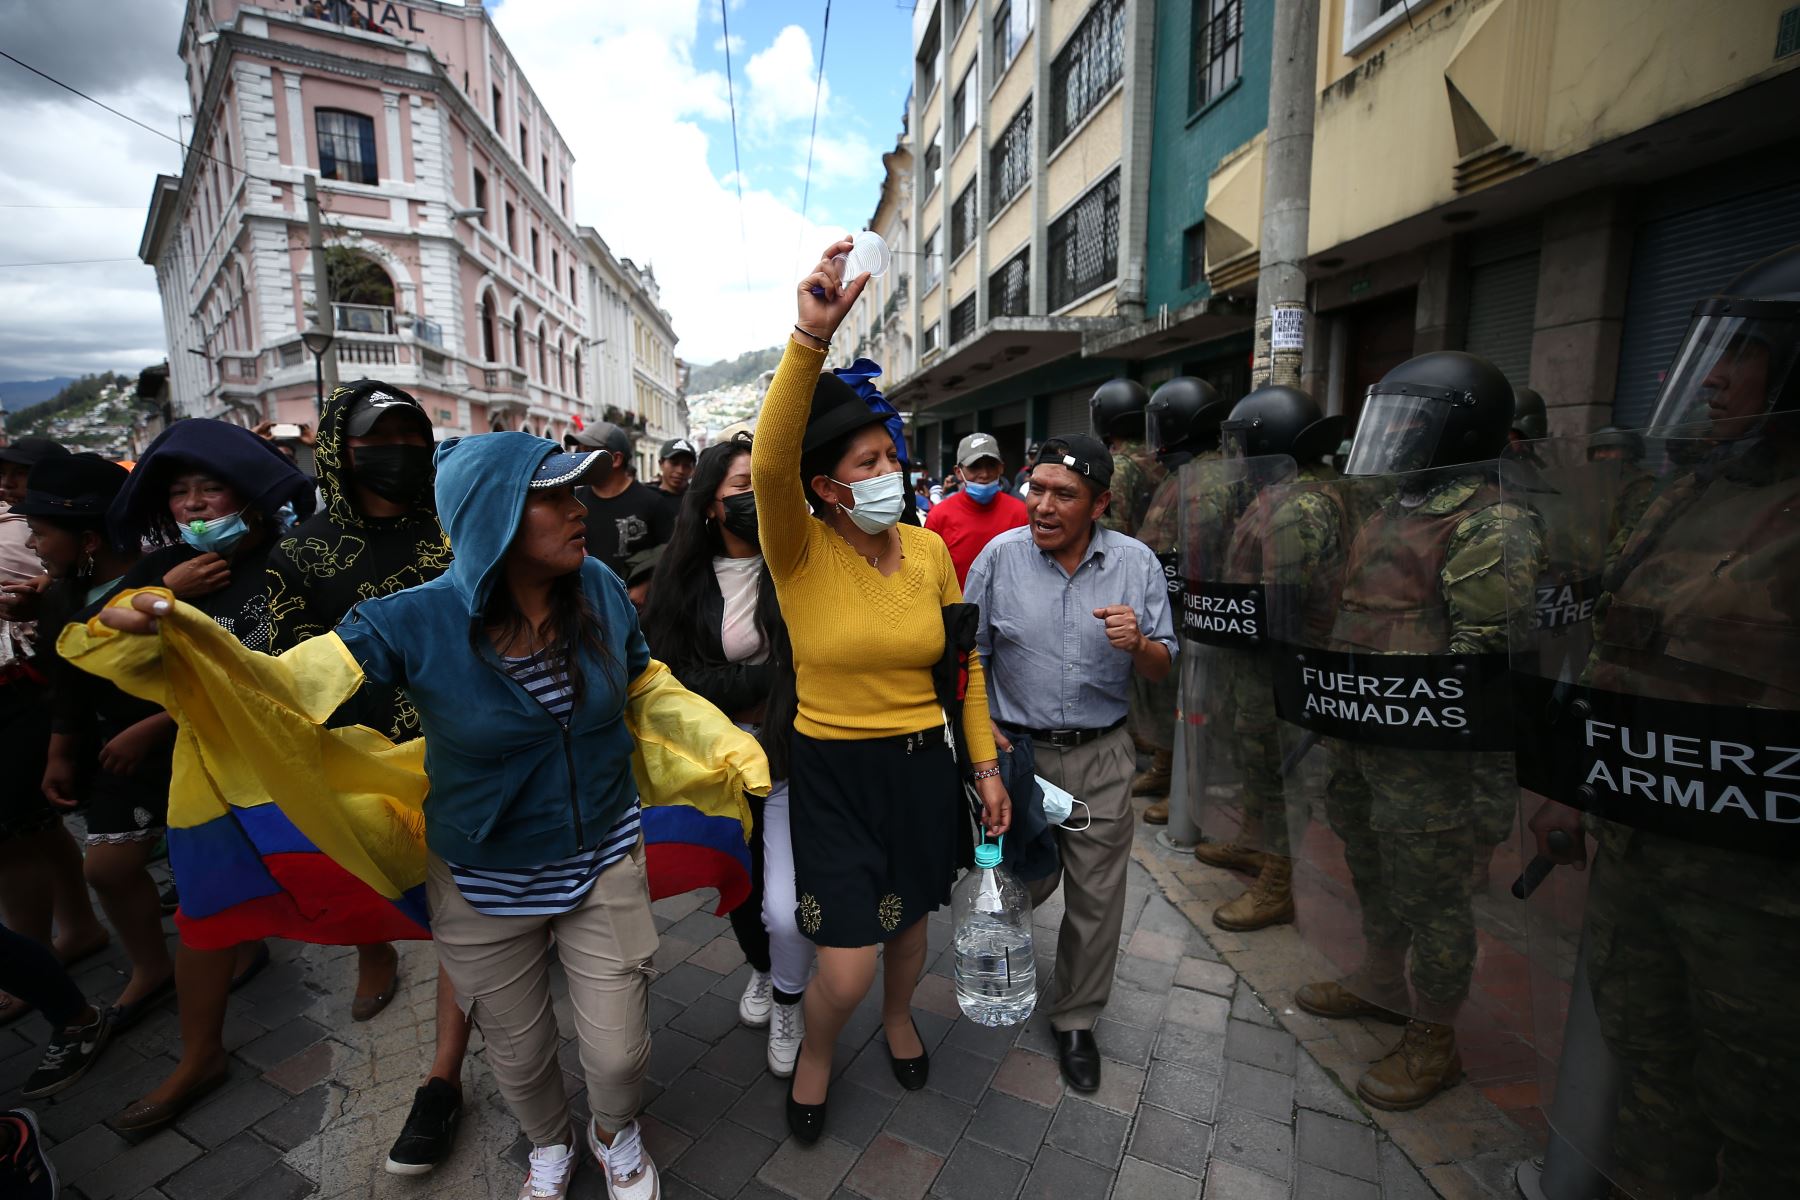 Mujeres gritan consignas contra el Gobierno frente a una línea de agentes antimotines , en las calles de Quito . El centro de Quito fue escenario de nuevos disturbios debido a enfrentamientos entre manifestantes y policías durante el noveno día consecutivo de las protestas en Ecuador.
Foto: EFE